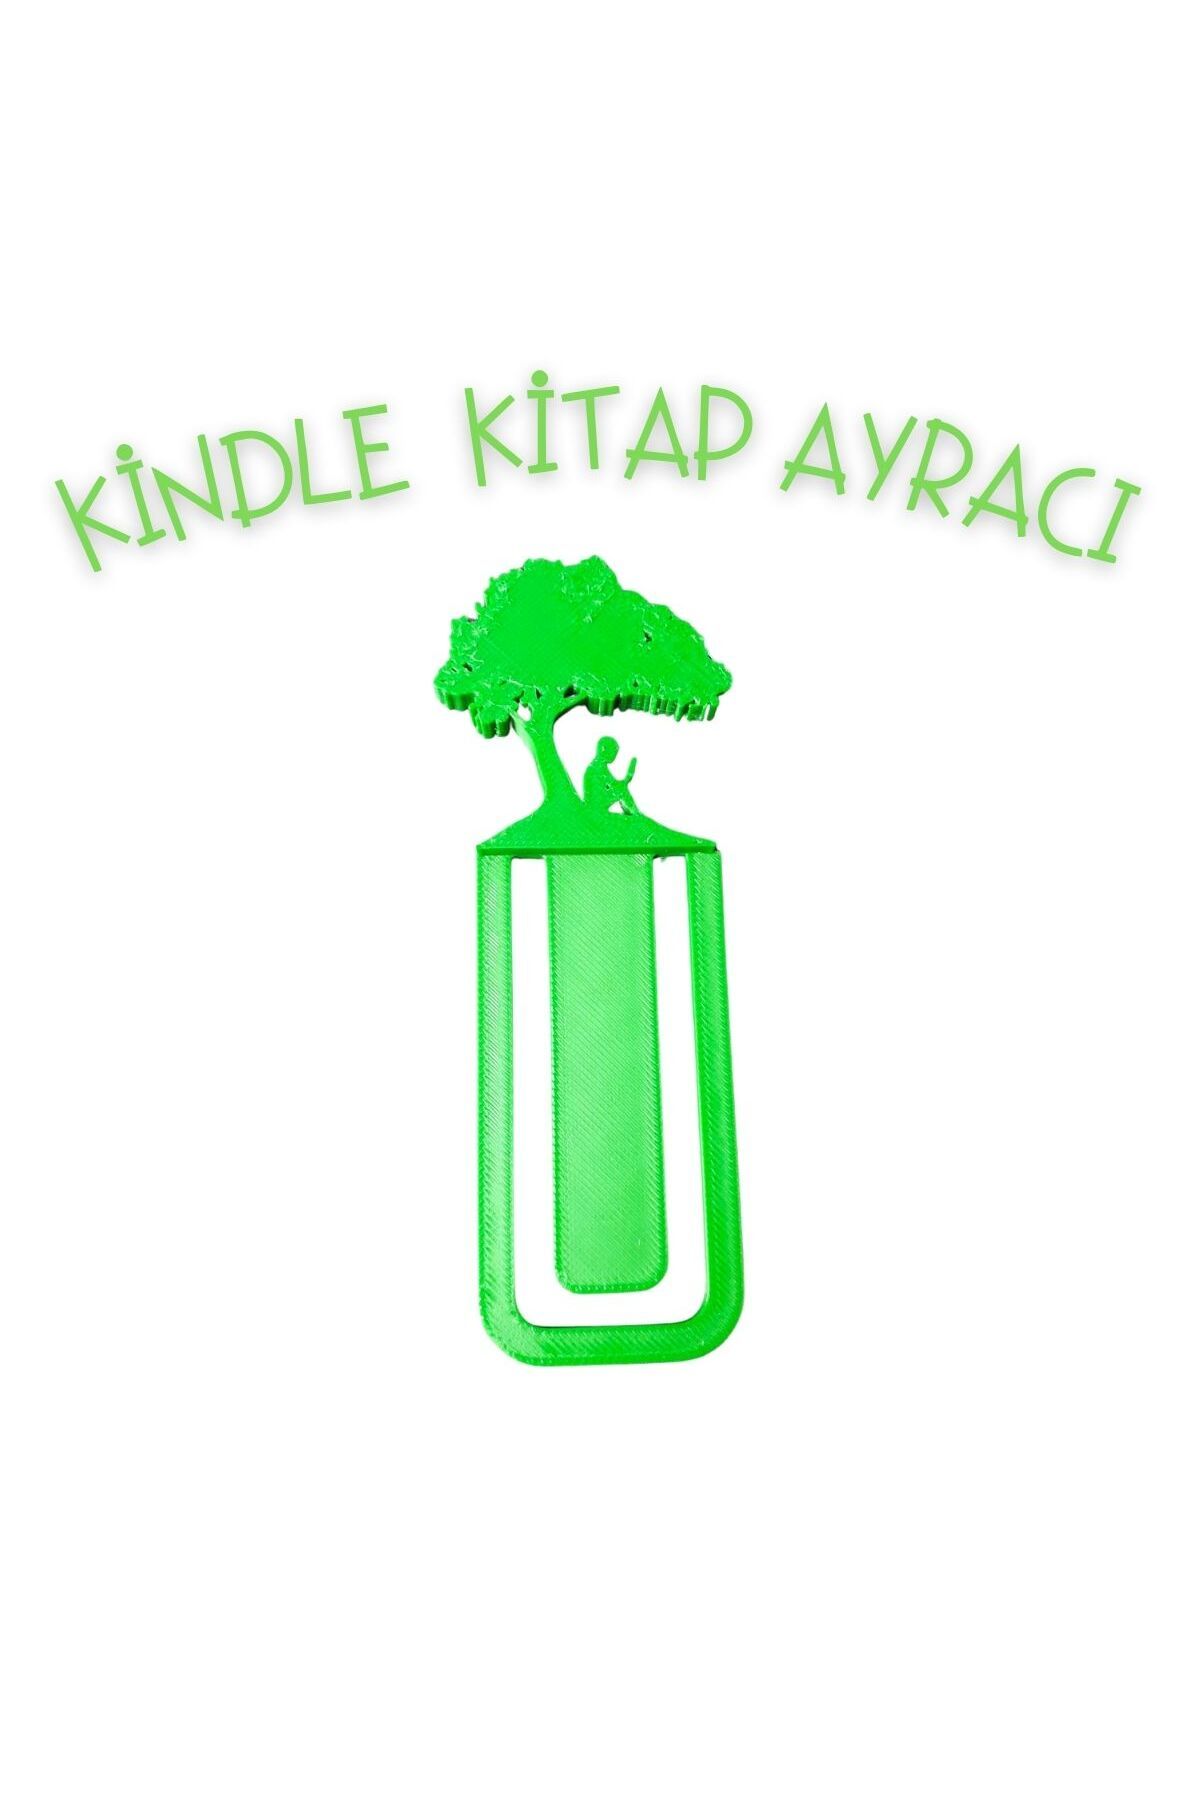 PLA Kindle logolu ağaç kitap ayracı hediyelik